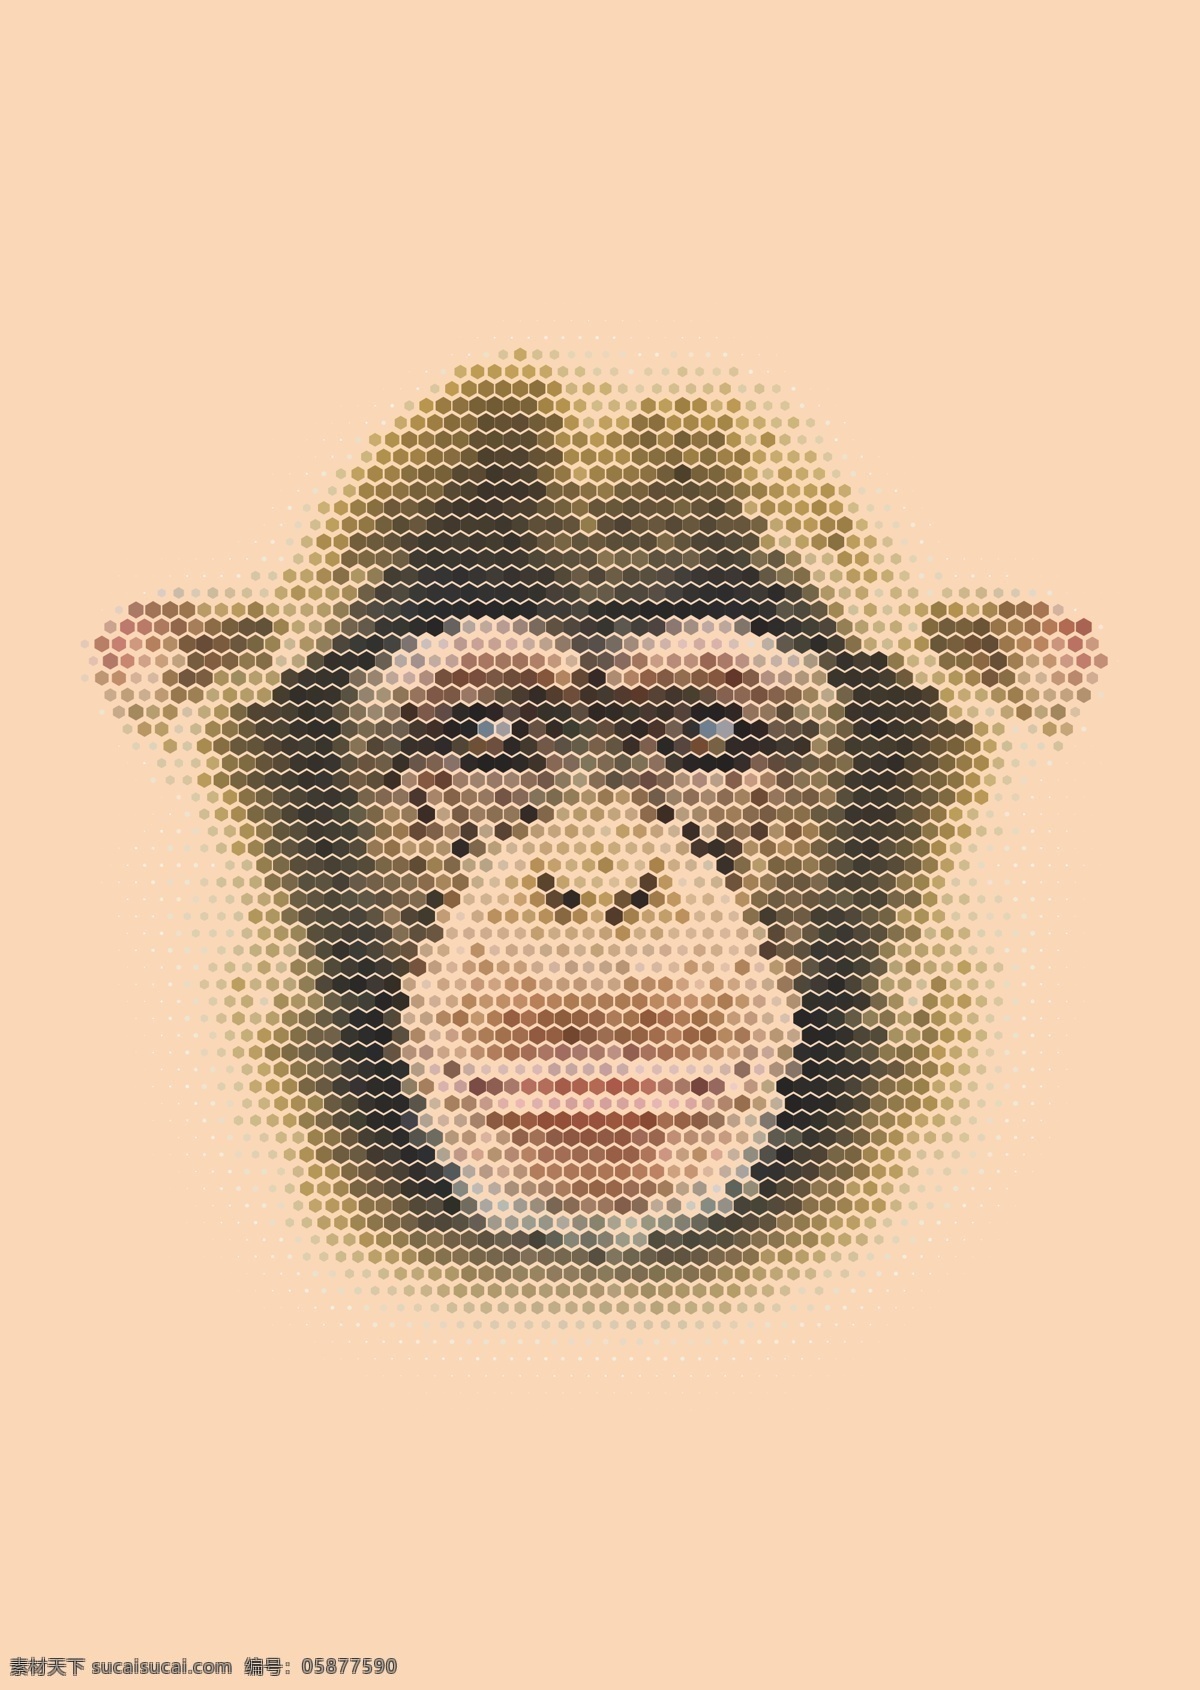 猩猩 大猩猩 t恤图案 动物矢量 动物肖像 时尚插画 动物插画 时尚背景 矢量 背景底纹 生物世界 野生动物